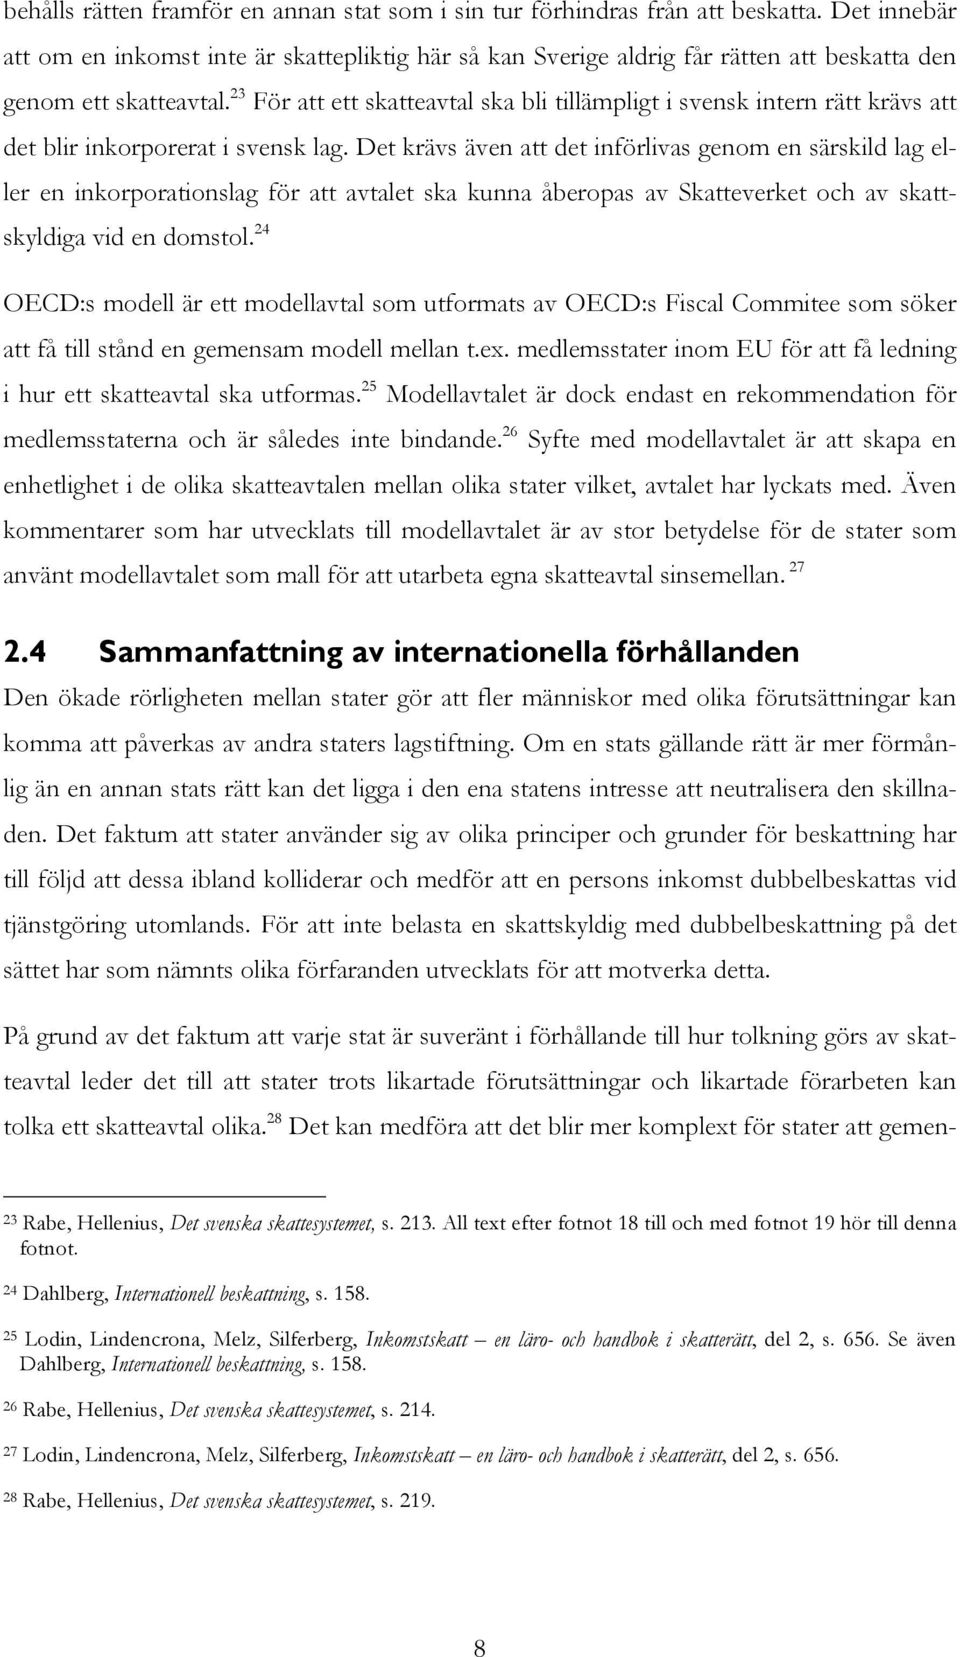 23 För att ett skatteavtal ska bli tillämpligt i svensk intern rätt krävs att det blir inkorporerat i svensk lag.